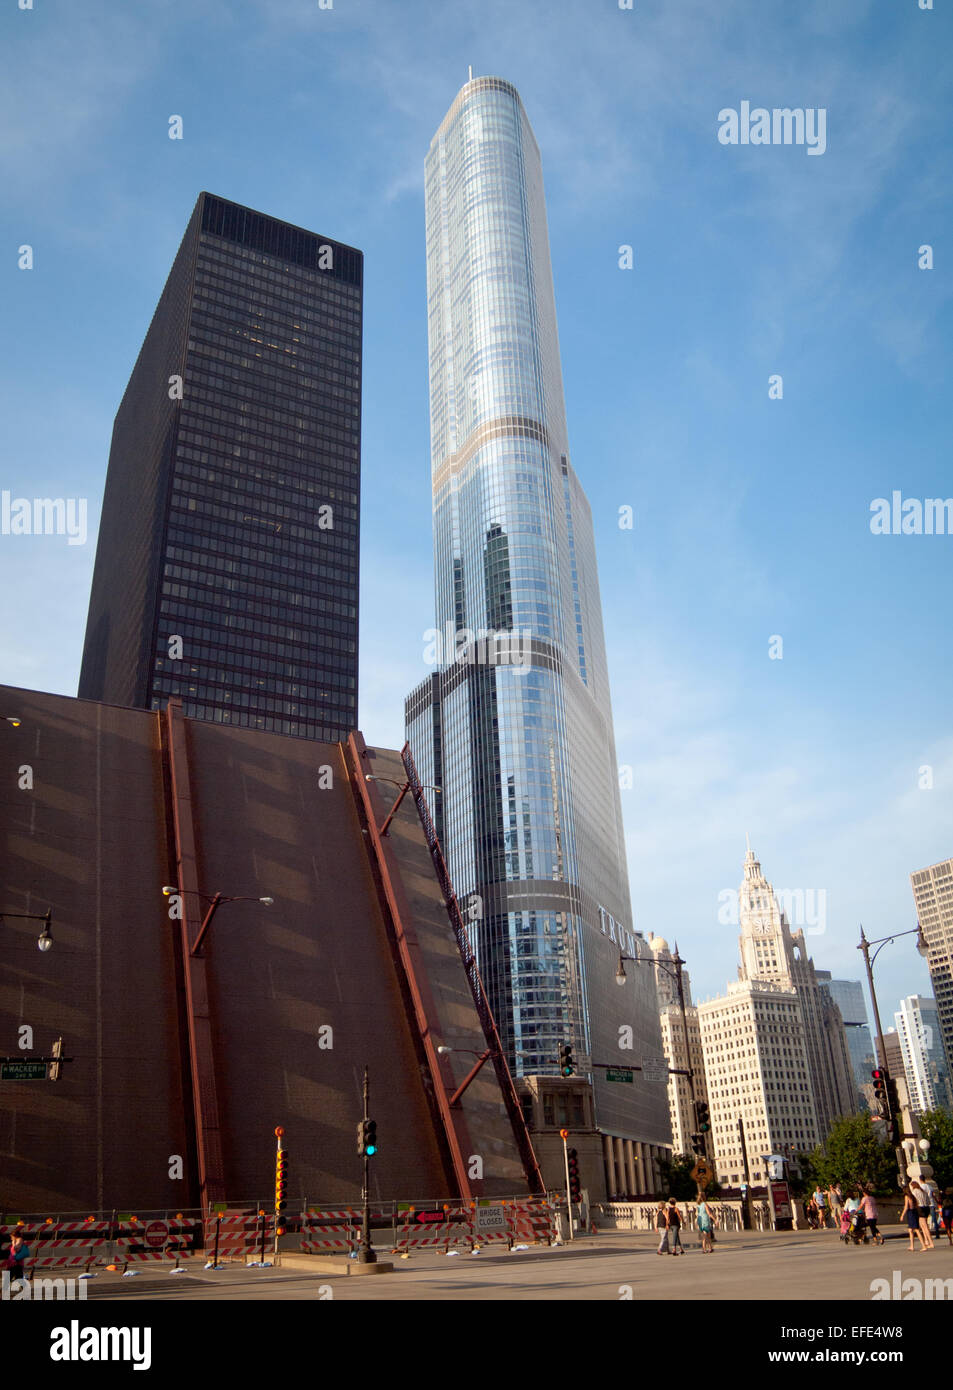 State Street Zugbrücke, aufgewachsen in Chicago. (AMA) IBM-Gebäude, Trump Tower Chicago und Wrigley Building im Hintergrund. Stockfoto